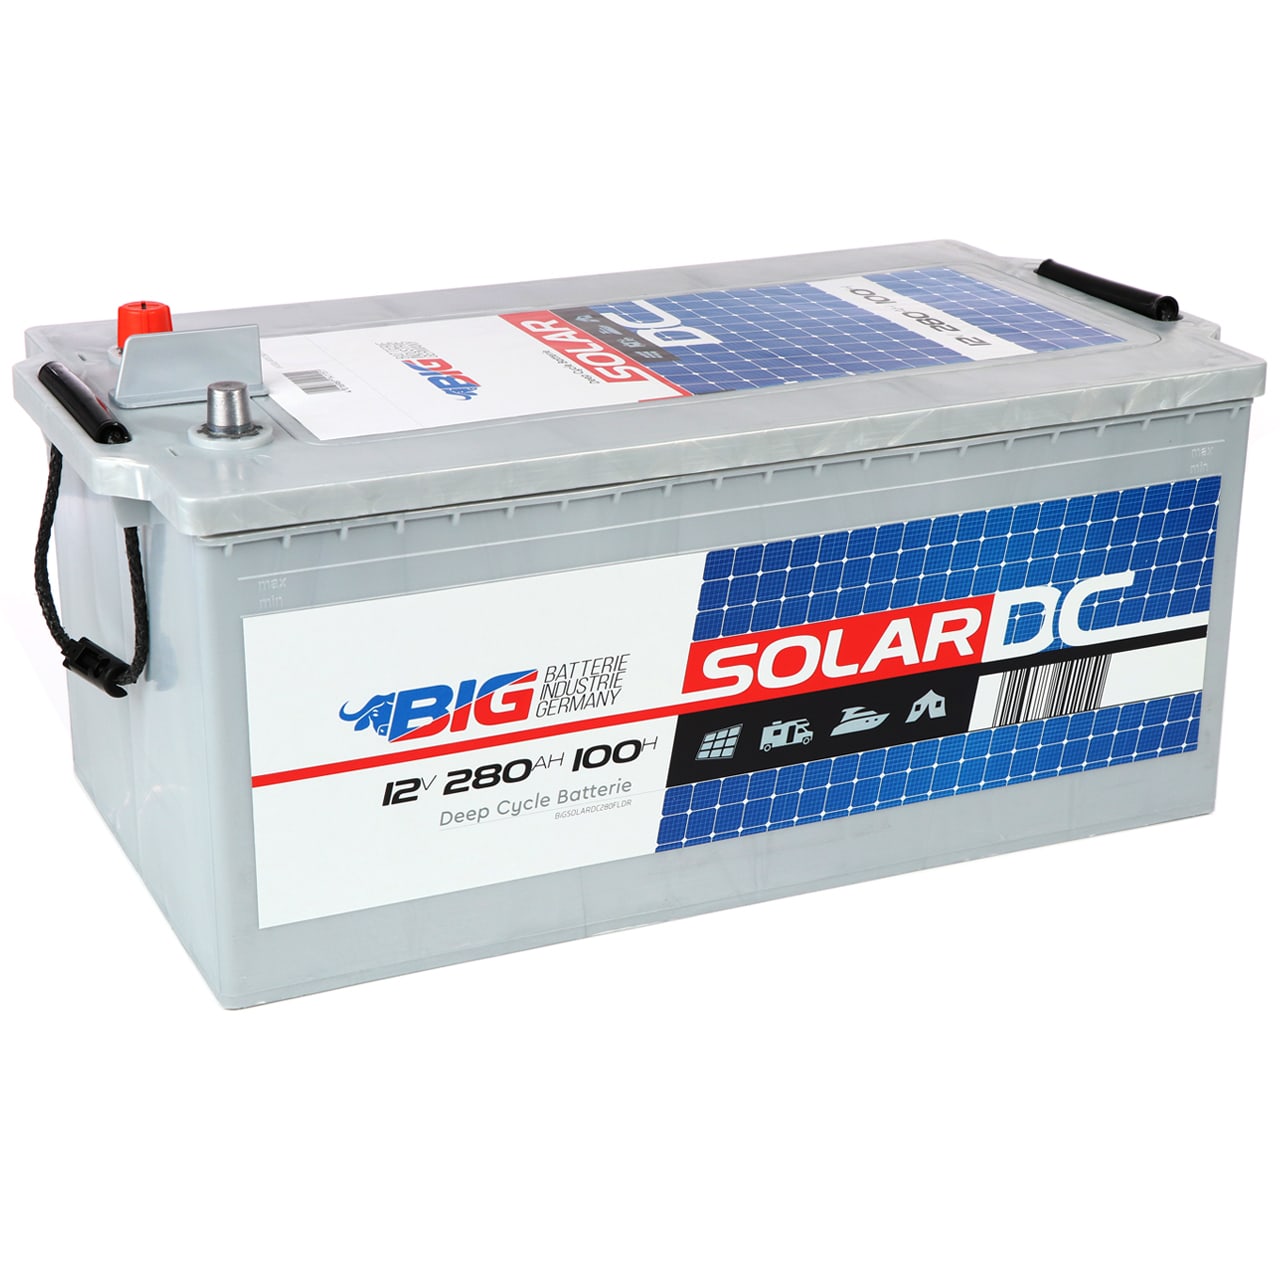 Solarbatterie 280Ah 12V EXAKT DCS Batterie für Wohnmobil ersetzt 260Ah, Solarbatterie  280Ah 12V EXAKT DCS Wohnmobilbatterie Batterie ersetzt 260Ah